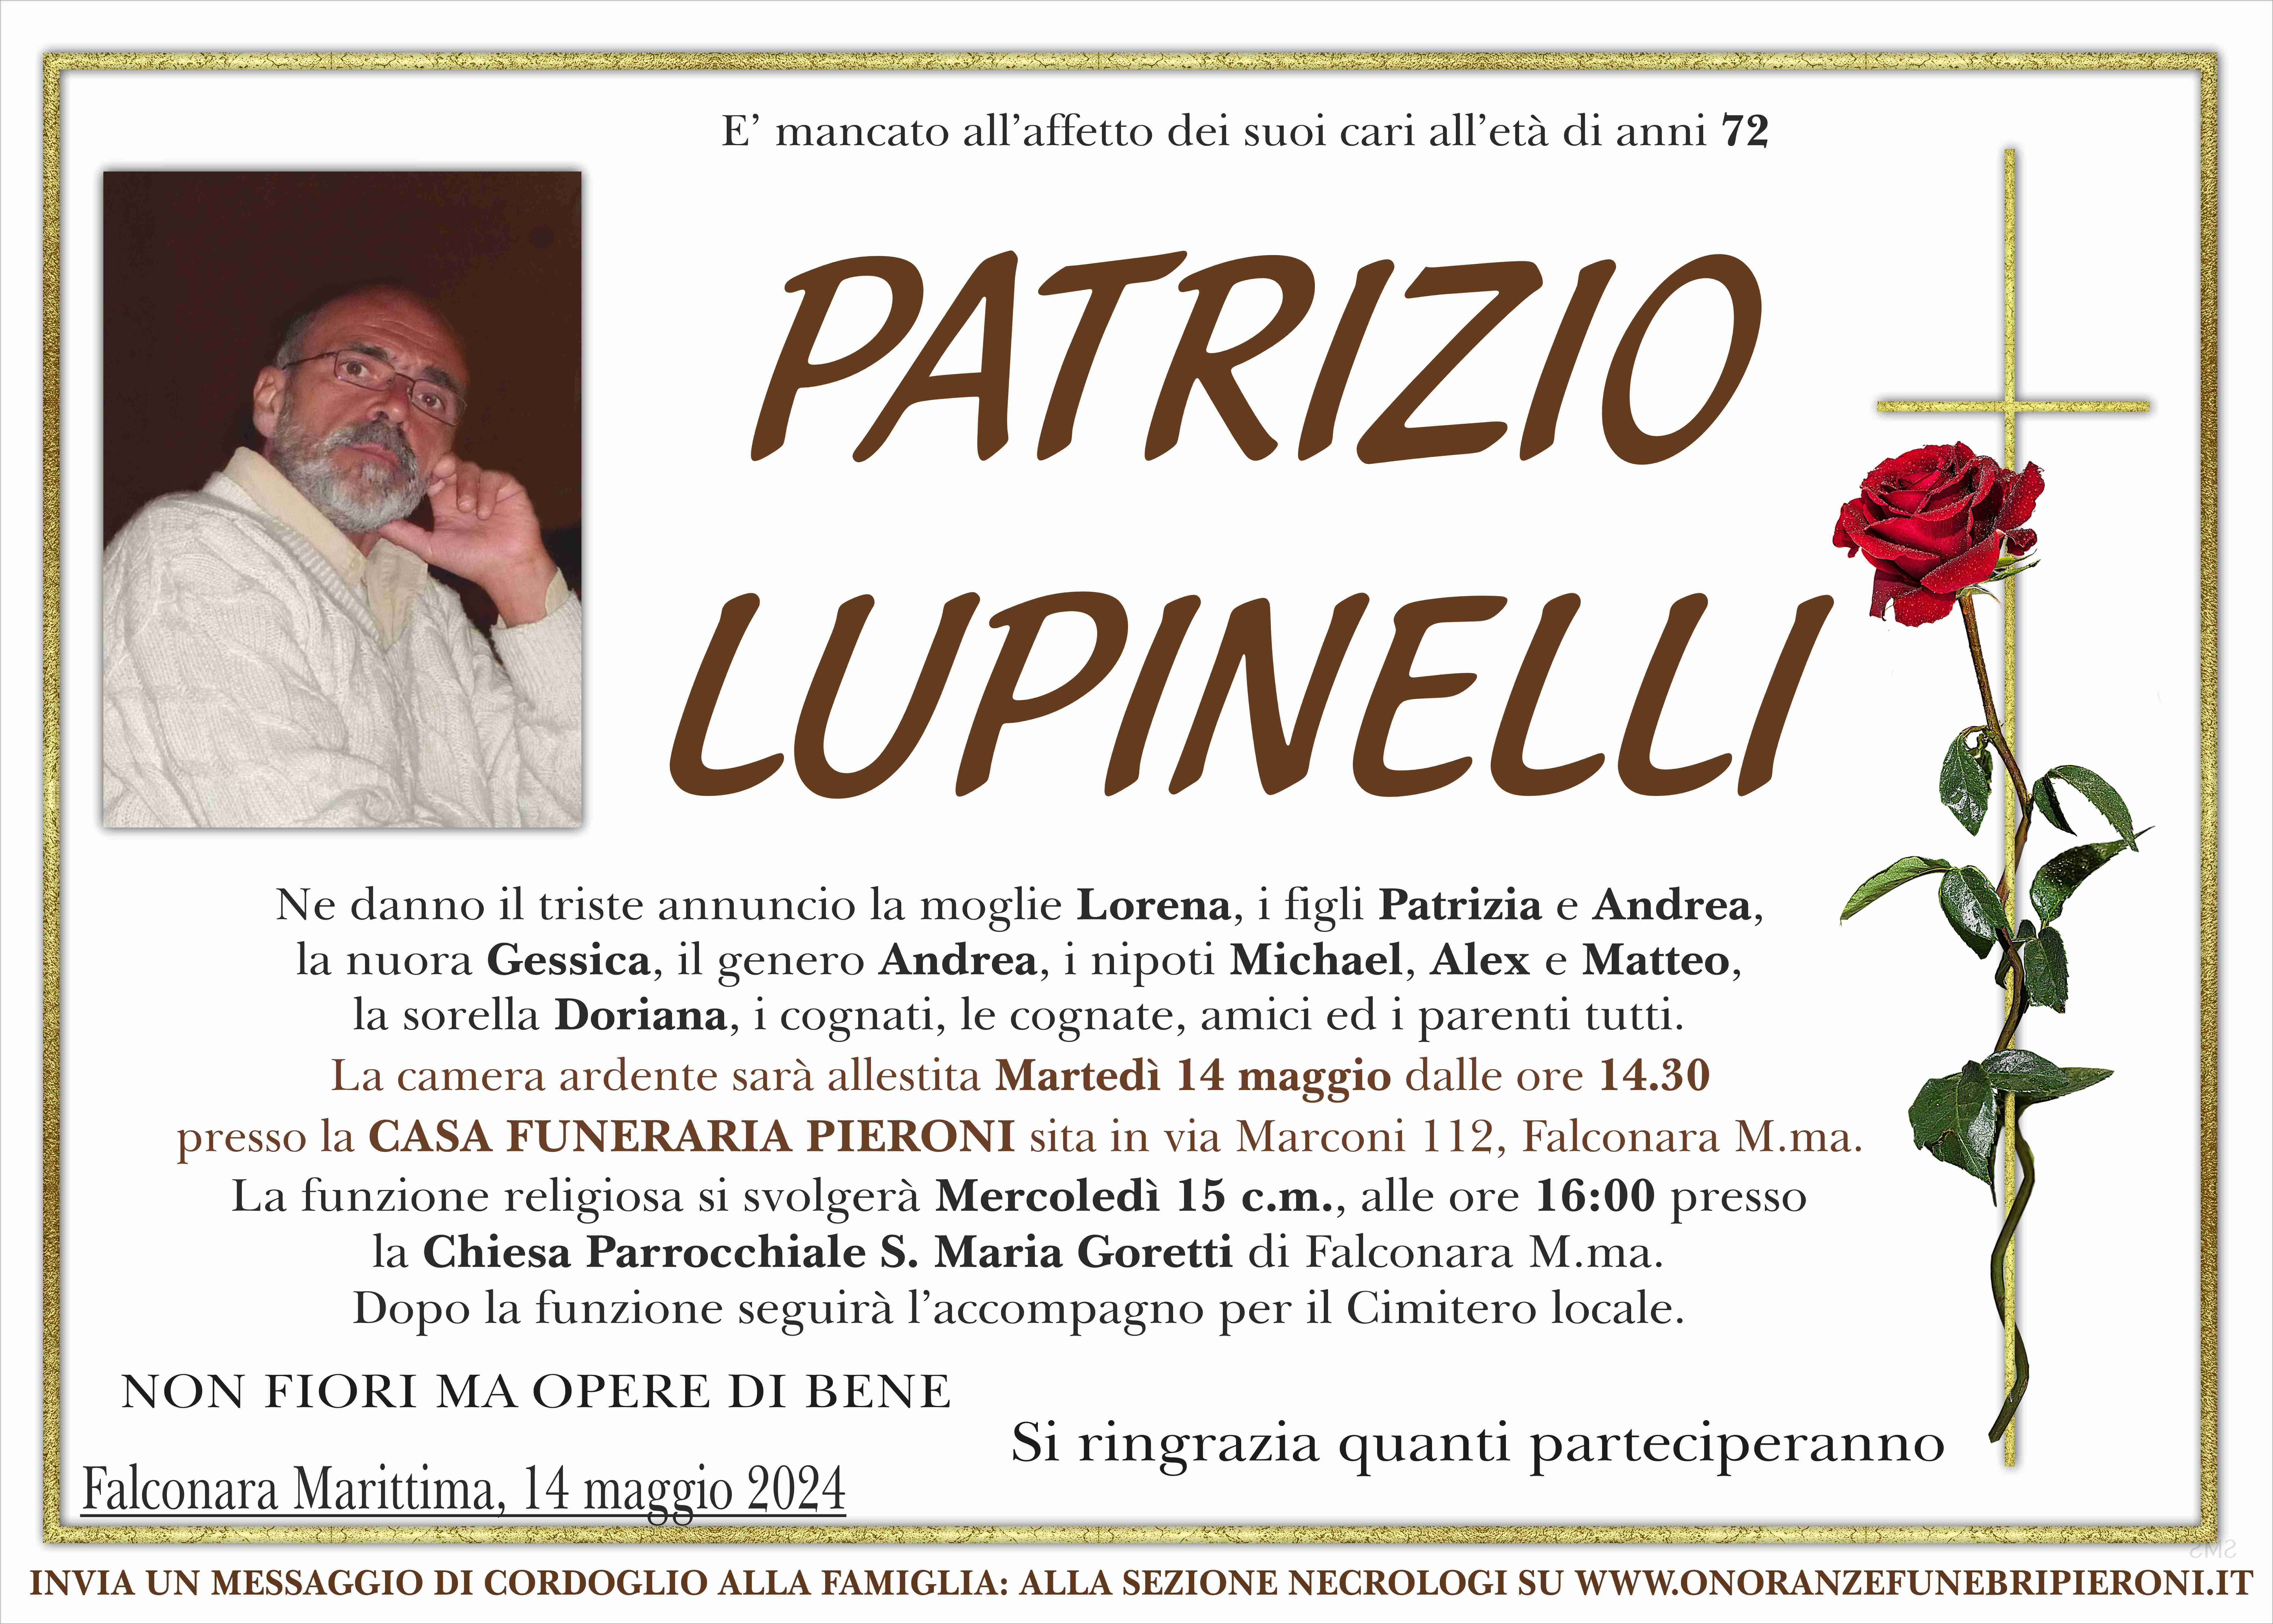 Patrizio Lupinelli